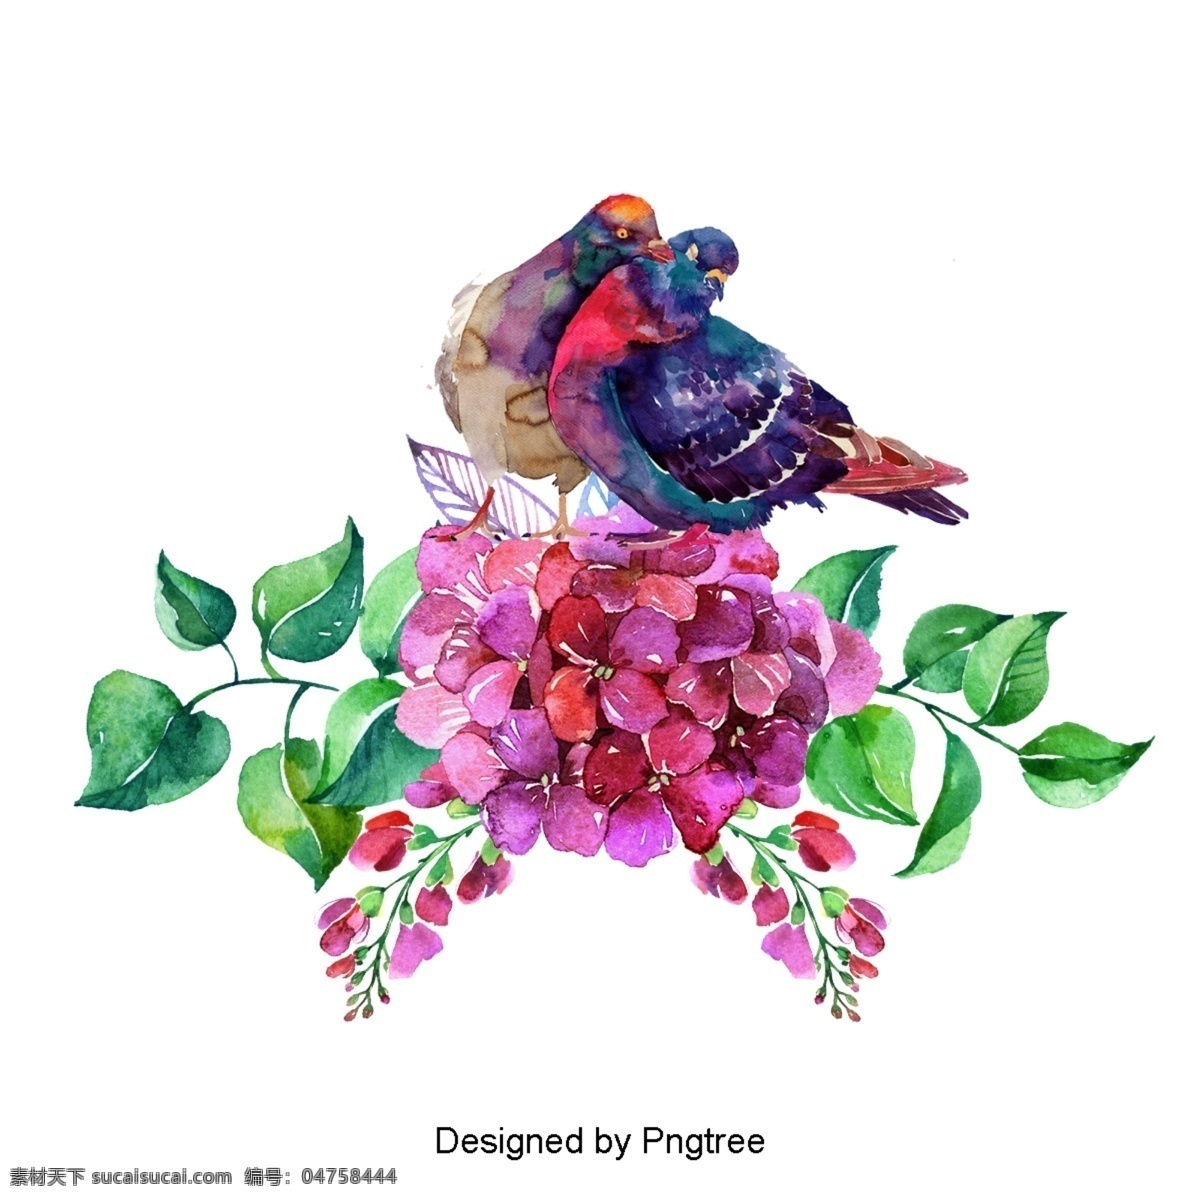 手绘花鸟图案 手绘 极 简 主义 鸟 动物 自然 图形设计 材料 图像 抽象 颜色